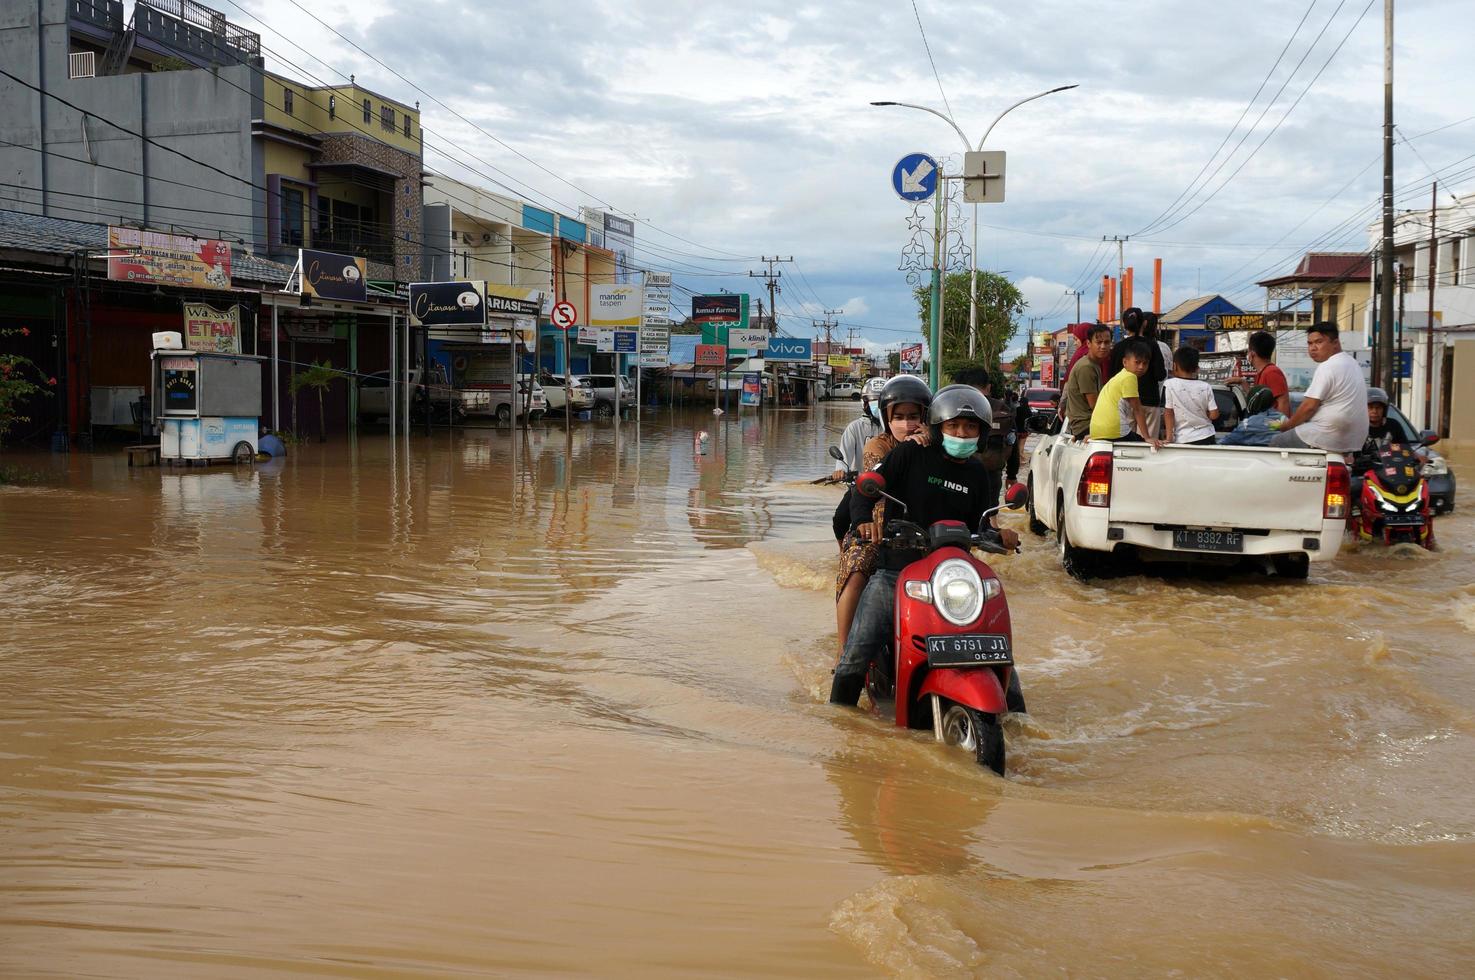 este de kutai, este de kalimantan, indonesia, 2022: las inundaciones golpean casas y carreteras debido a las altas precipitaciones y la marea alta de agua de mar. ubicación en sangatta, este de kutai, indonesia. foto